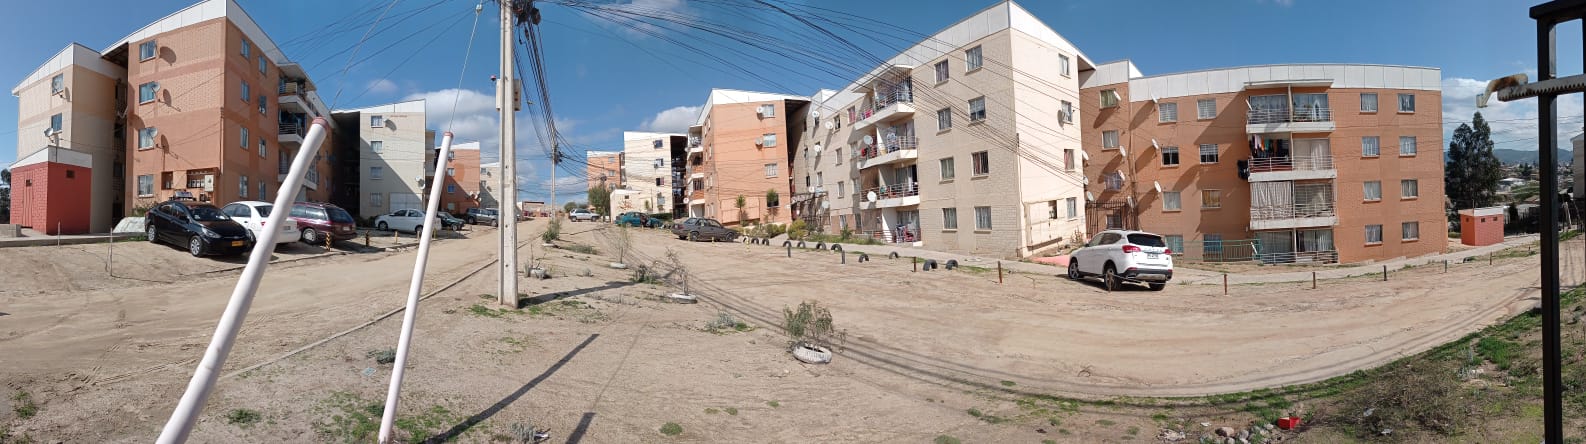 Quilpué: vecinos de conjunto habitacional “Los Lirios” obtienen subsidio para mejoramiento de viviendas.